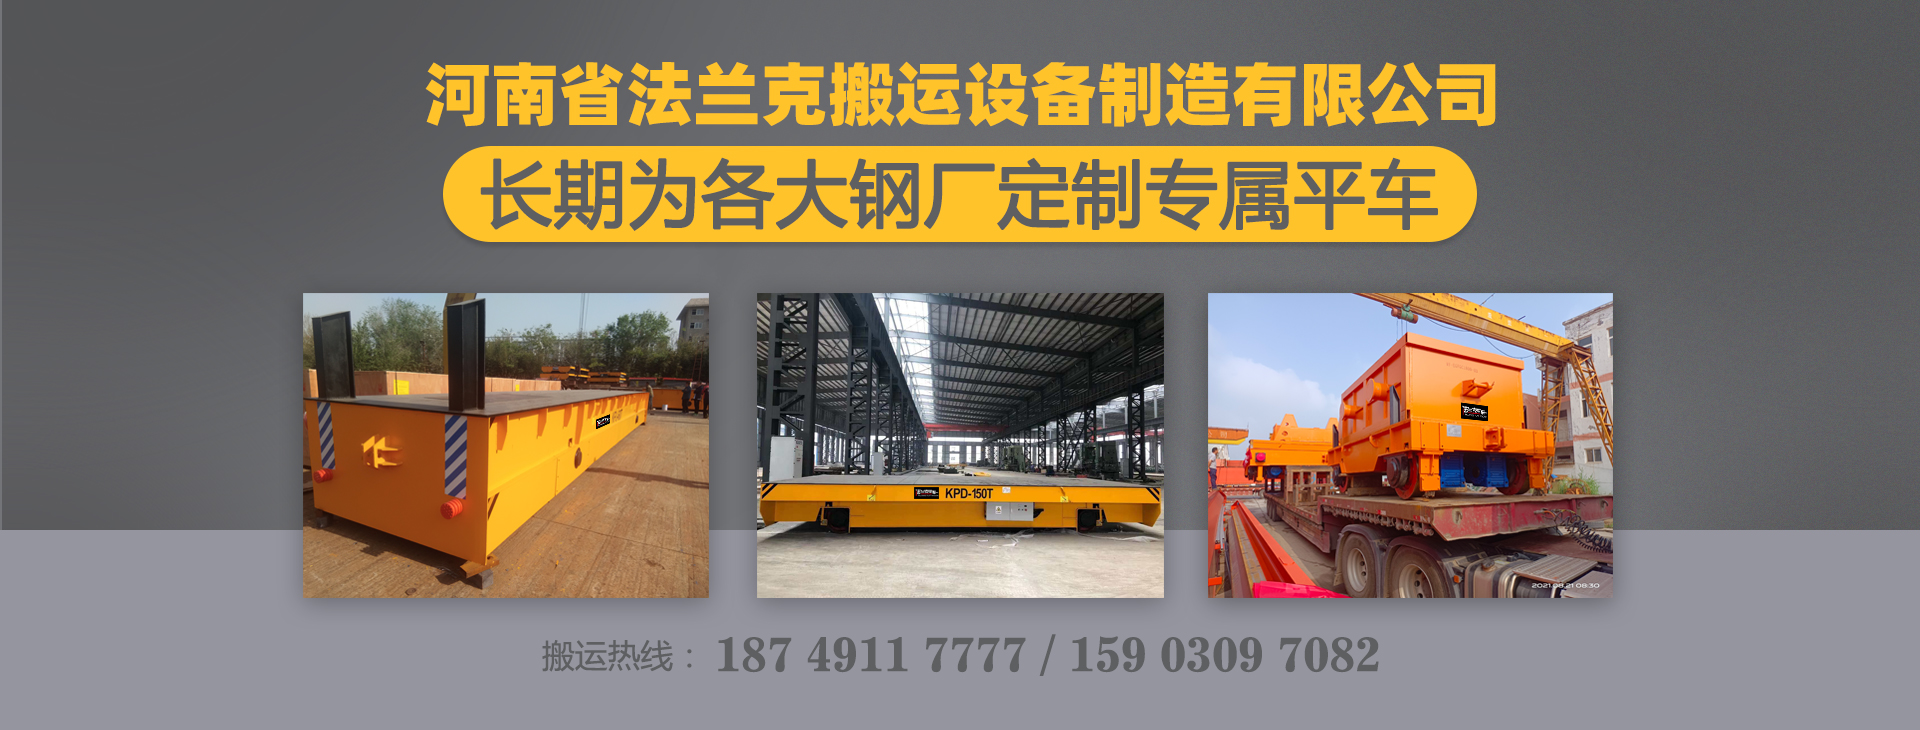 河南省法兰克搬运设备制造有限公司